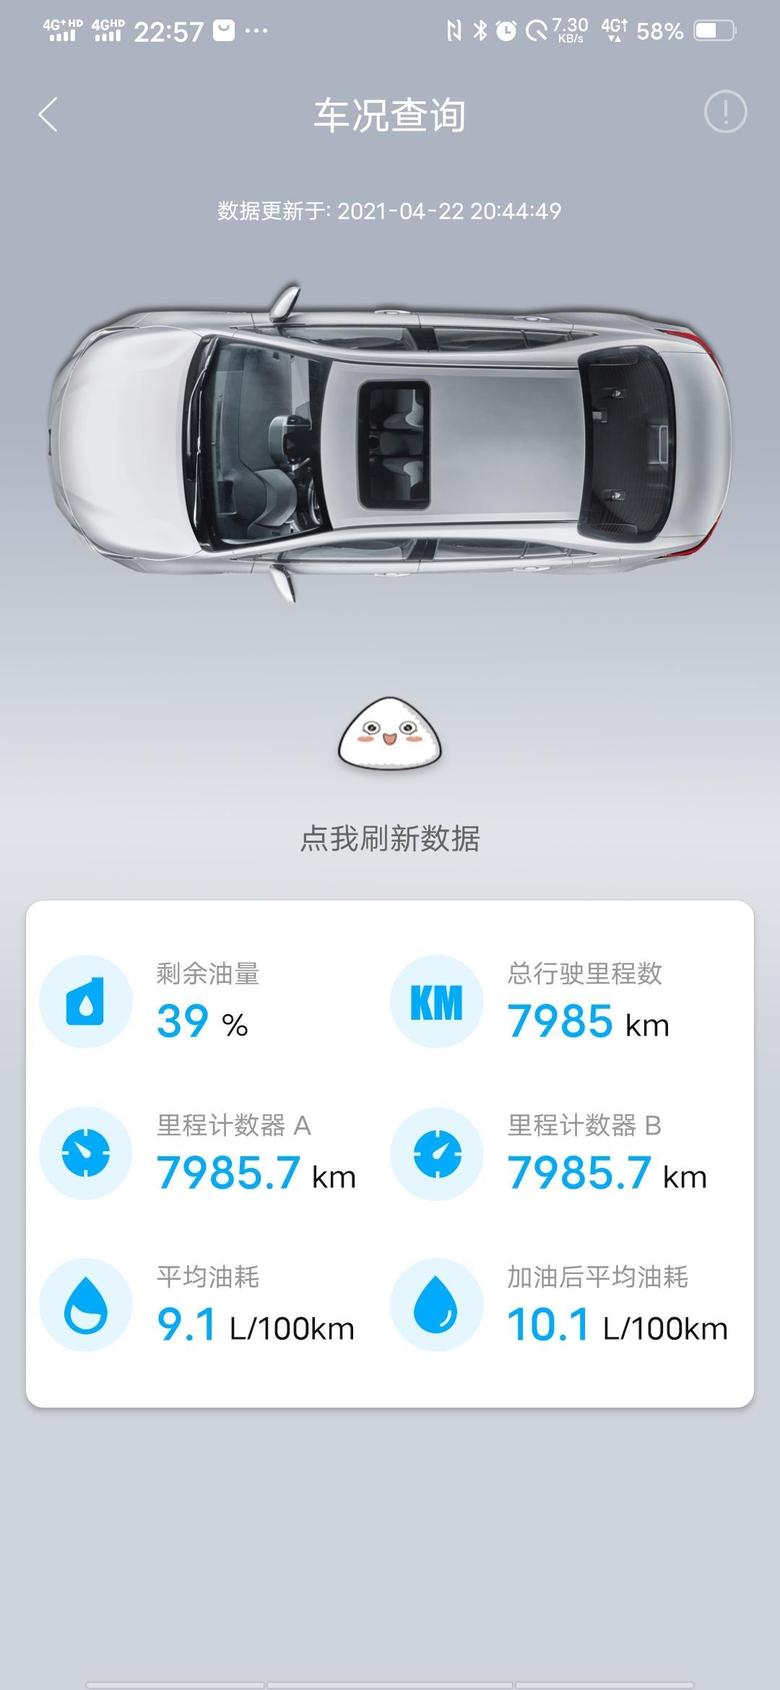 威兰达 我的是2.0四驱豪华版的，在深圳市东莞市跑。在深圳东莞的朋友你们的是多少？我的这个油耗是不是太高了？？？